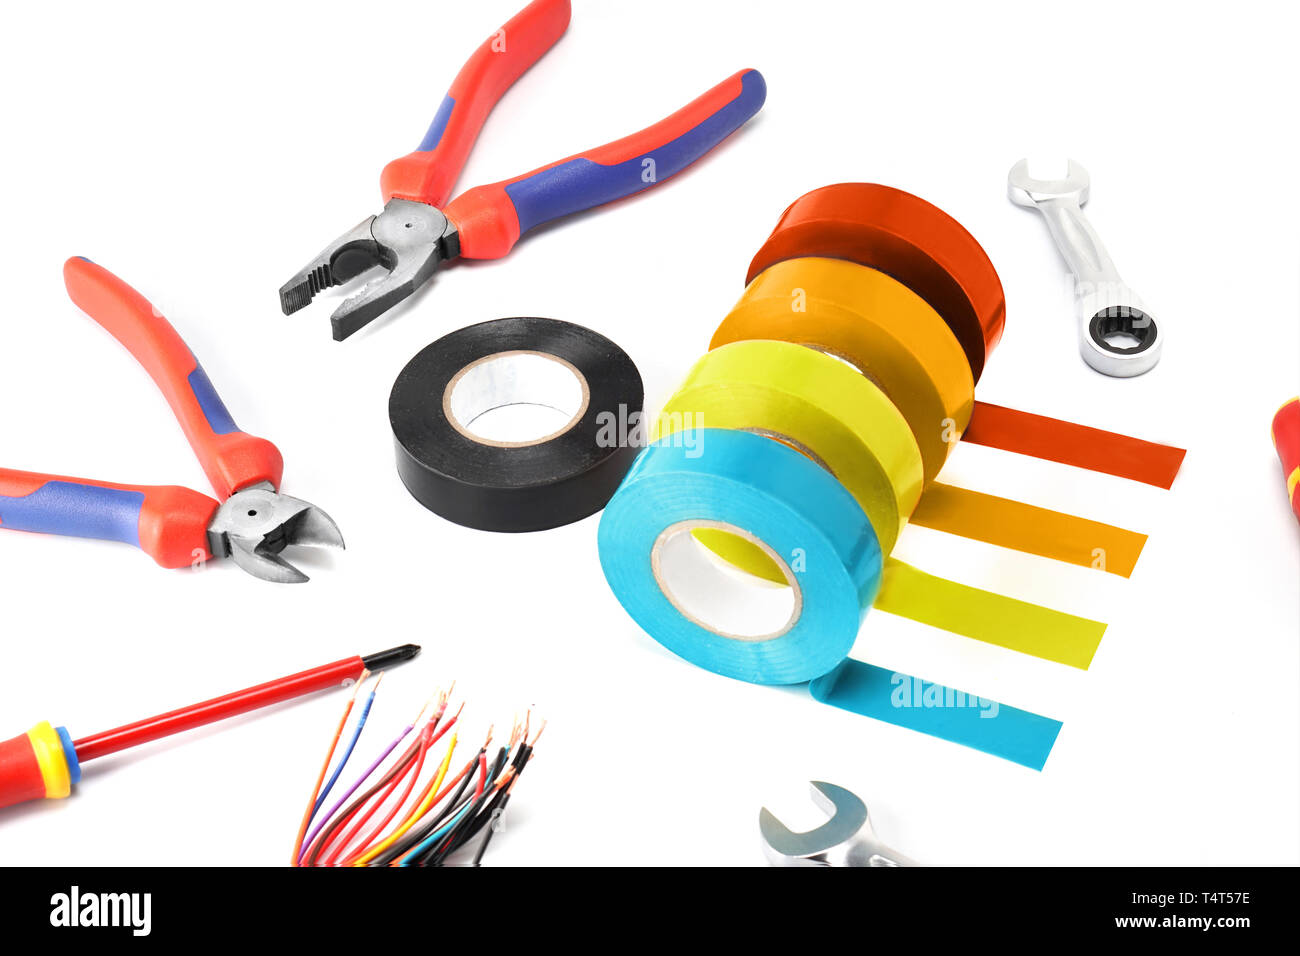 Zusammensetzung der Werkzeuge für die elektrofachkraft reparieren und dessen Schutz und Sicherheit auf einem weißen Hintergrund zu isolieren. Stockfoto